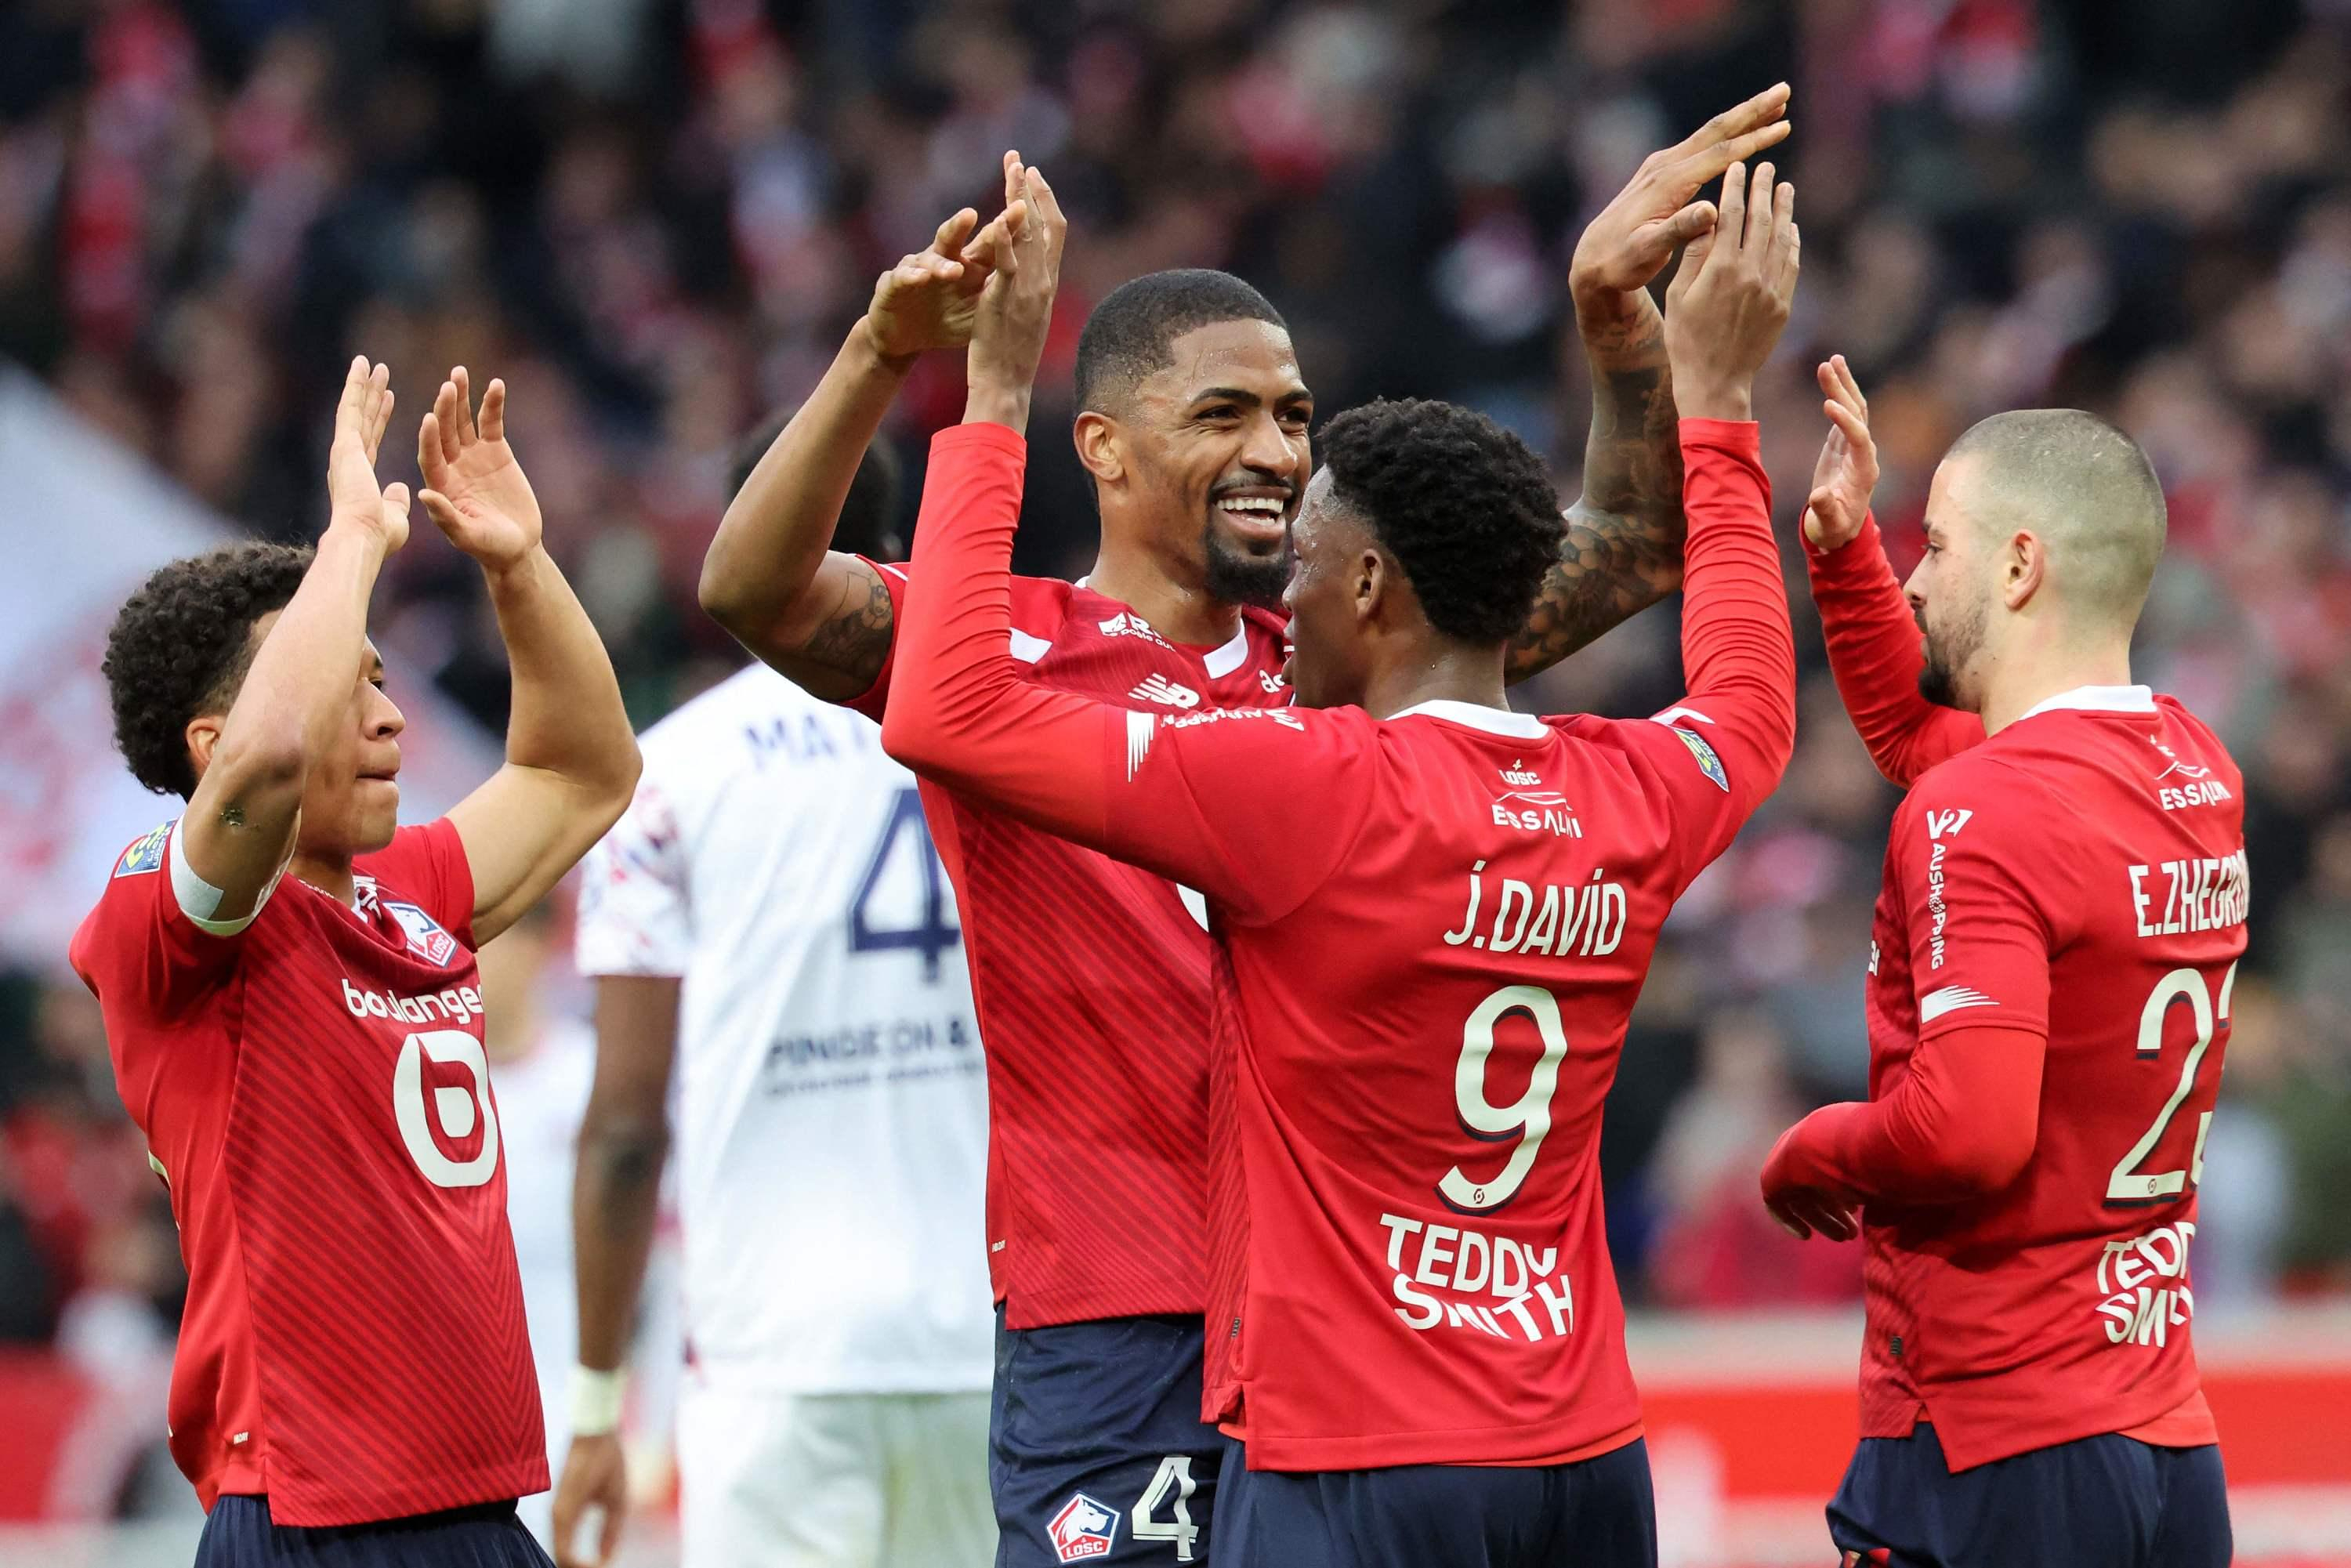 Ligue 1: Lille hits Clermont, Toulouse beats Reims, Lorient is no longer last